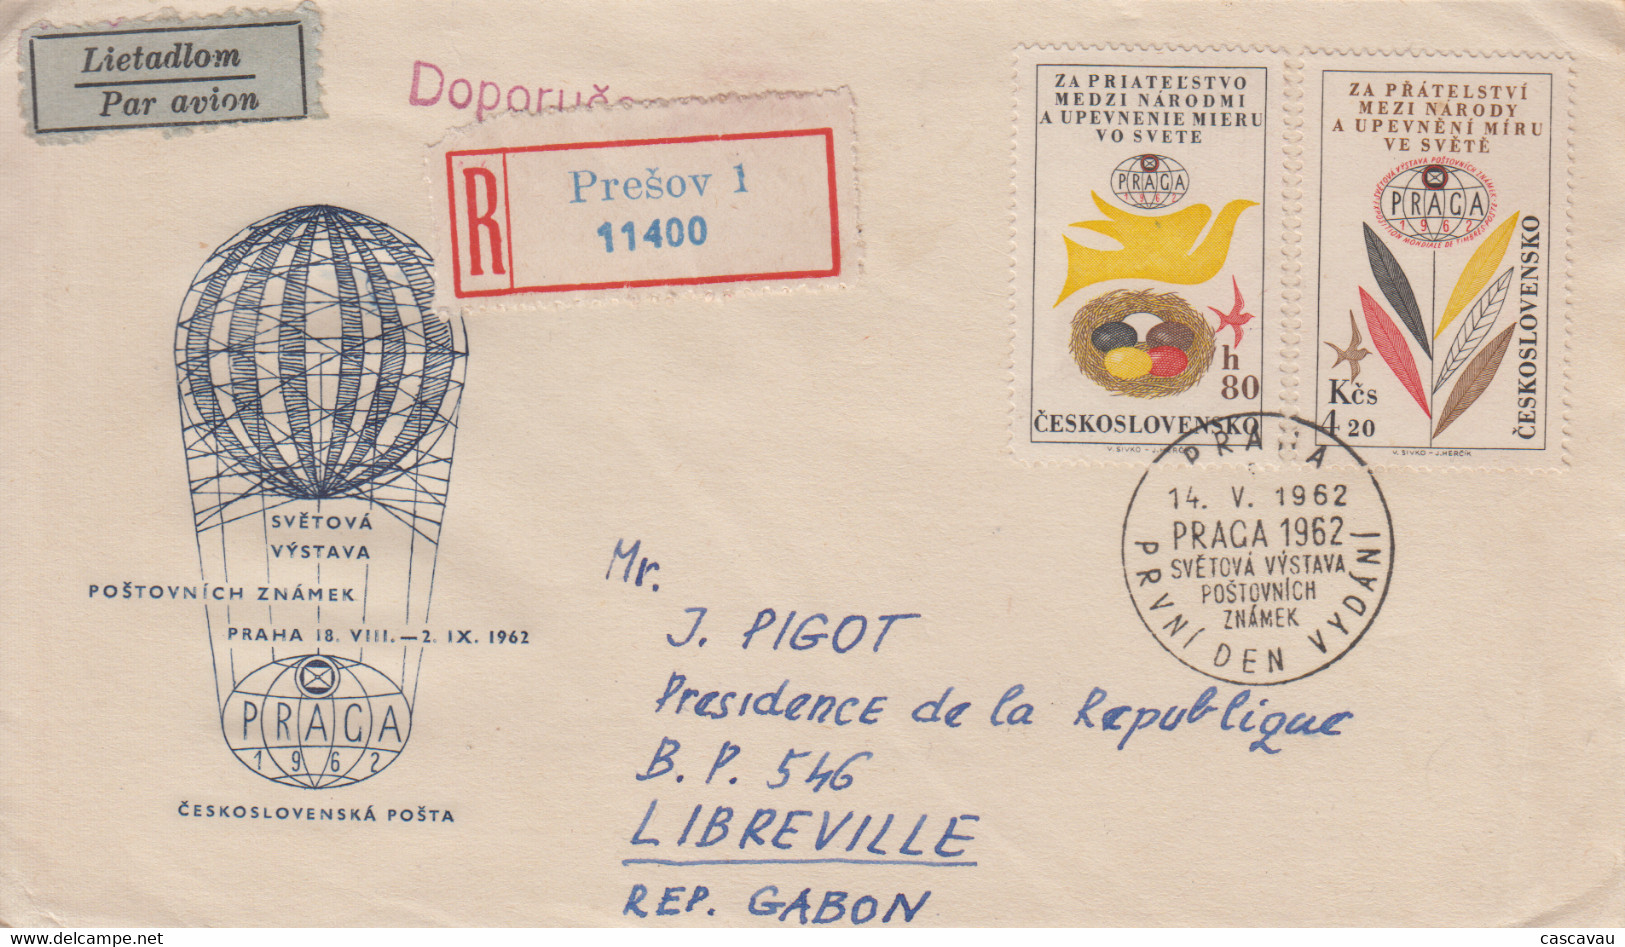 Enveloppe  Recommandée   TCHECOSLOVAQUIE   Exposition   Philatélique  PRAGUE   1962 - FDC